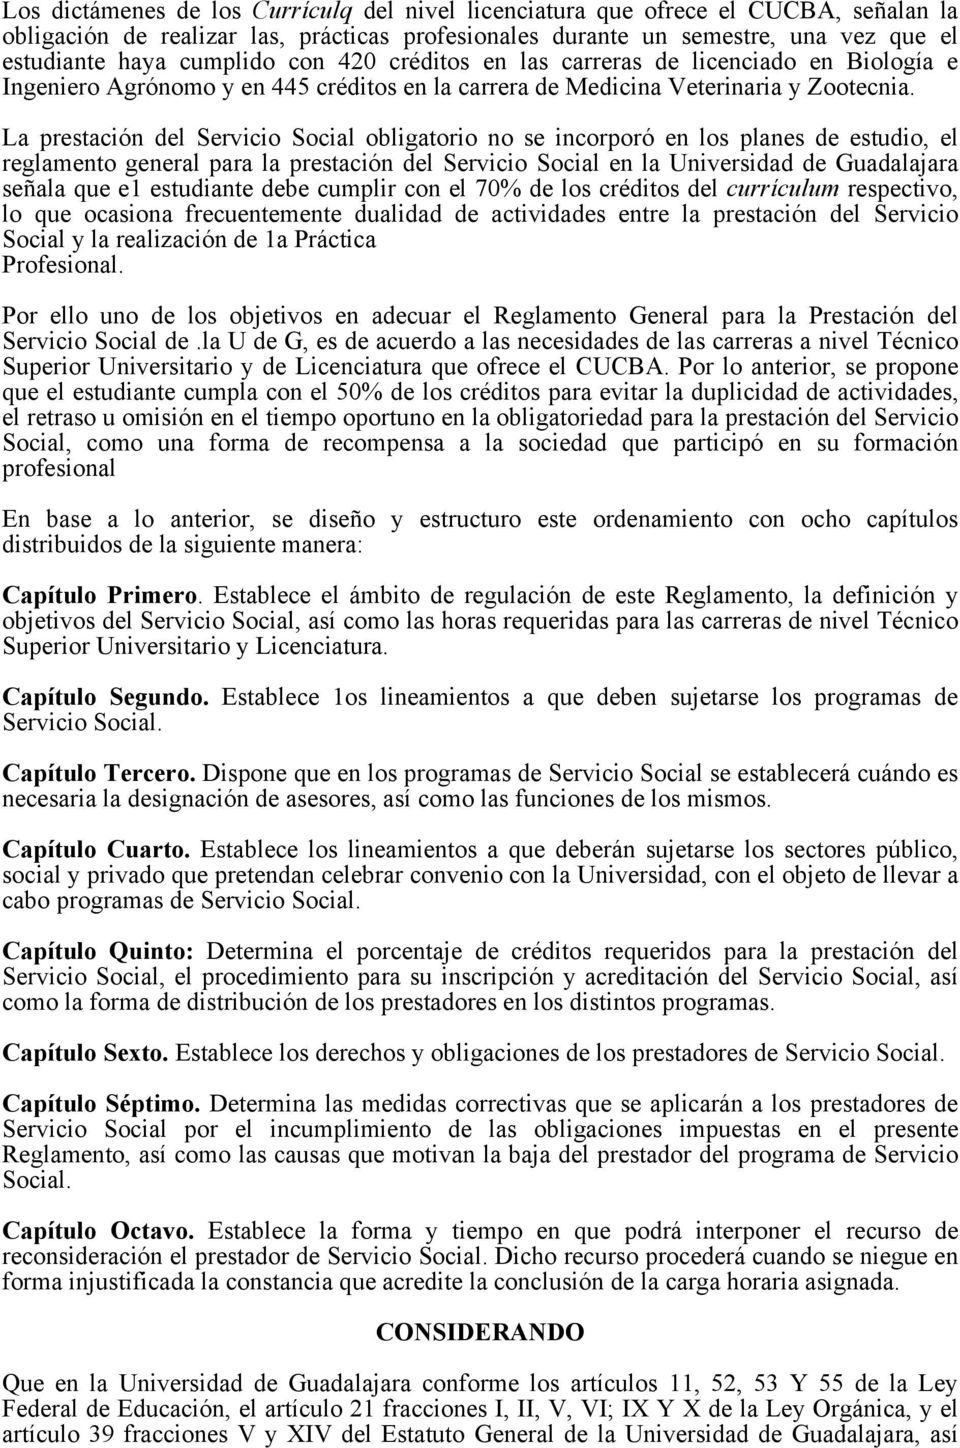 La prestación del Servicio Social obligatorio no se incorporó en los planes de estudio, el reglamento general para la prestación del Servicio Social en la Universidad de Guadalajara señala que e1